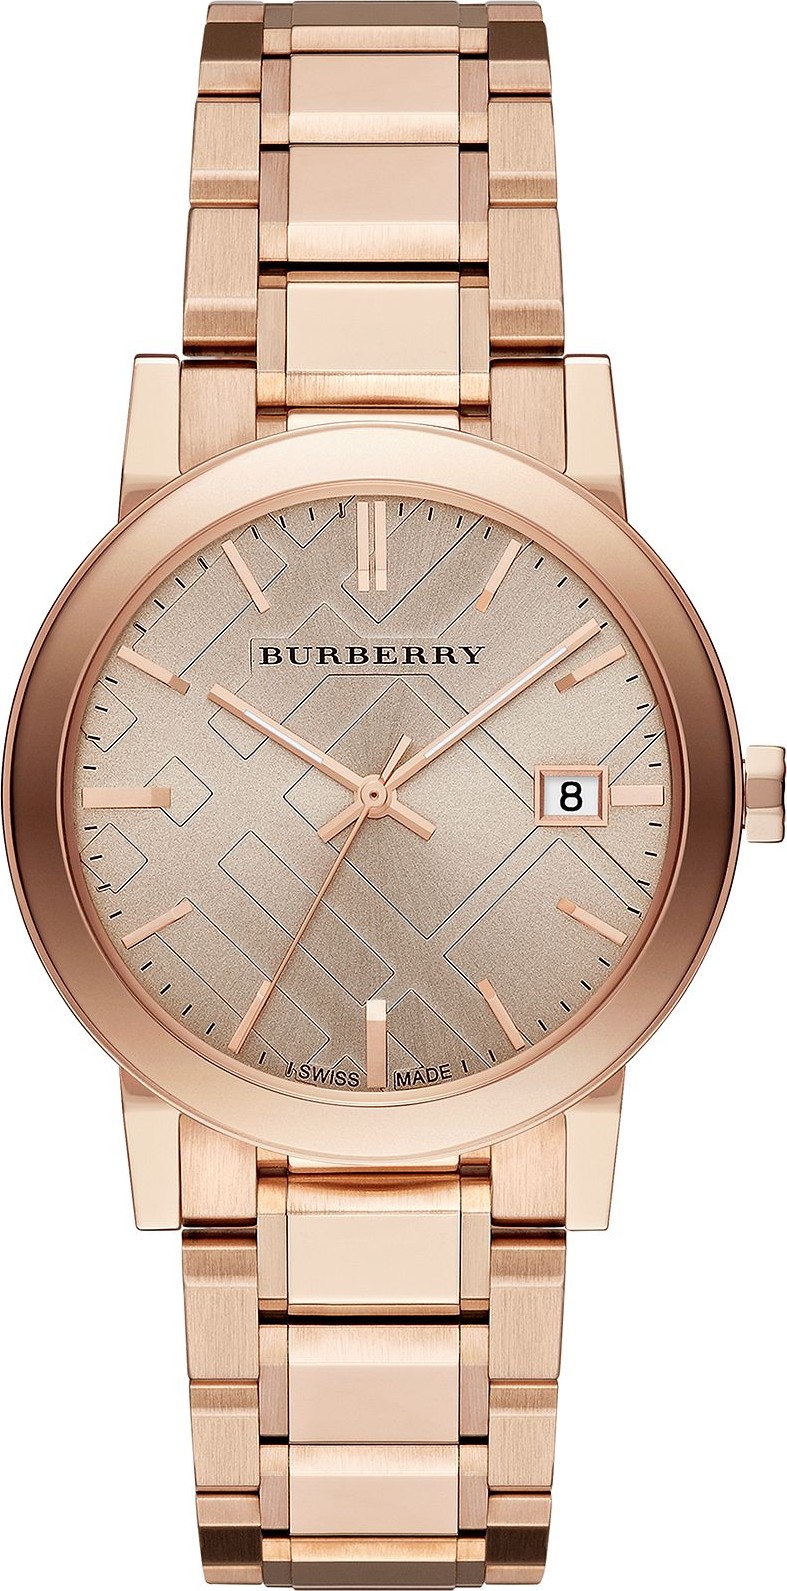 đồng hồ burberry nữ giảm giá